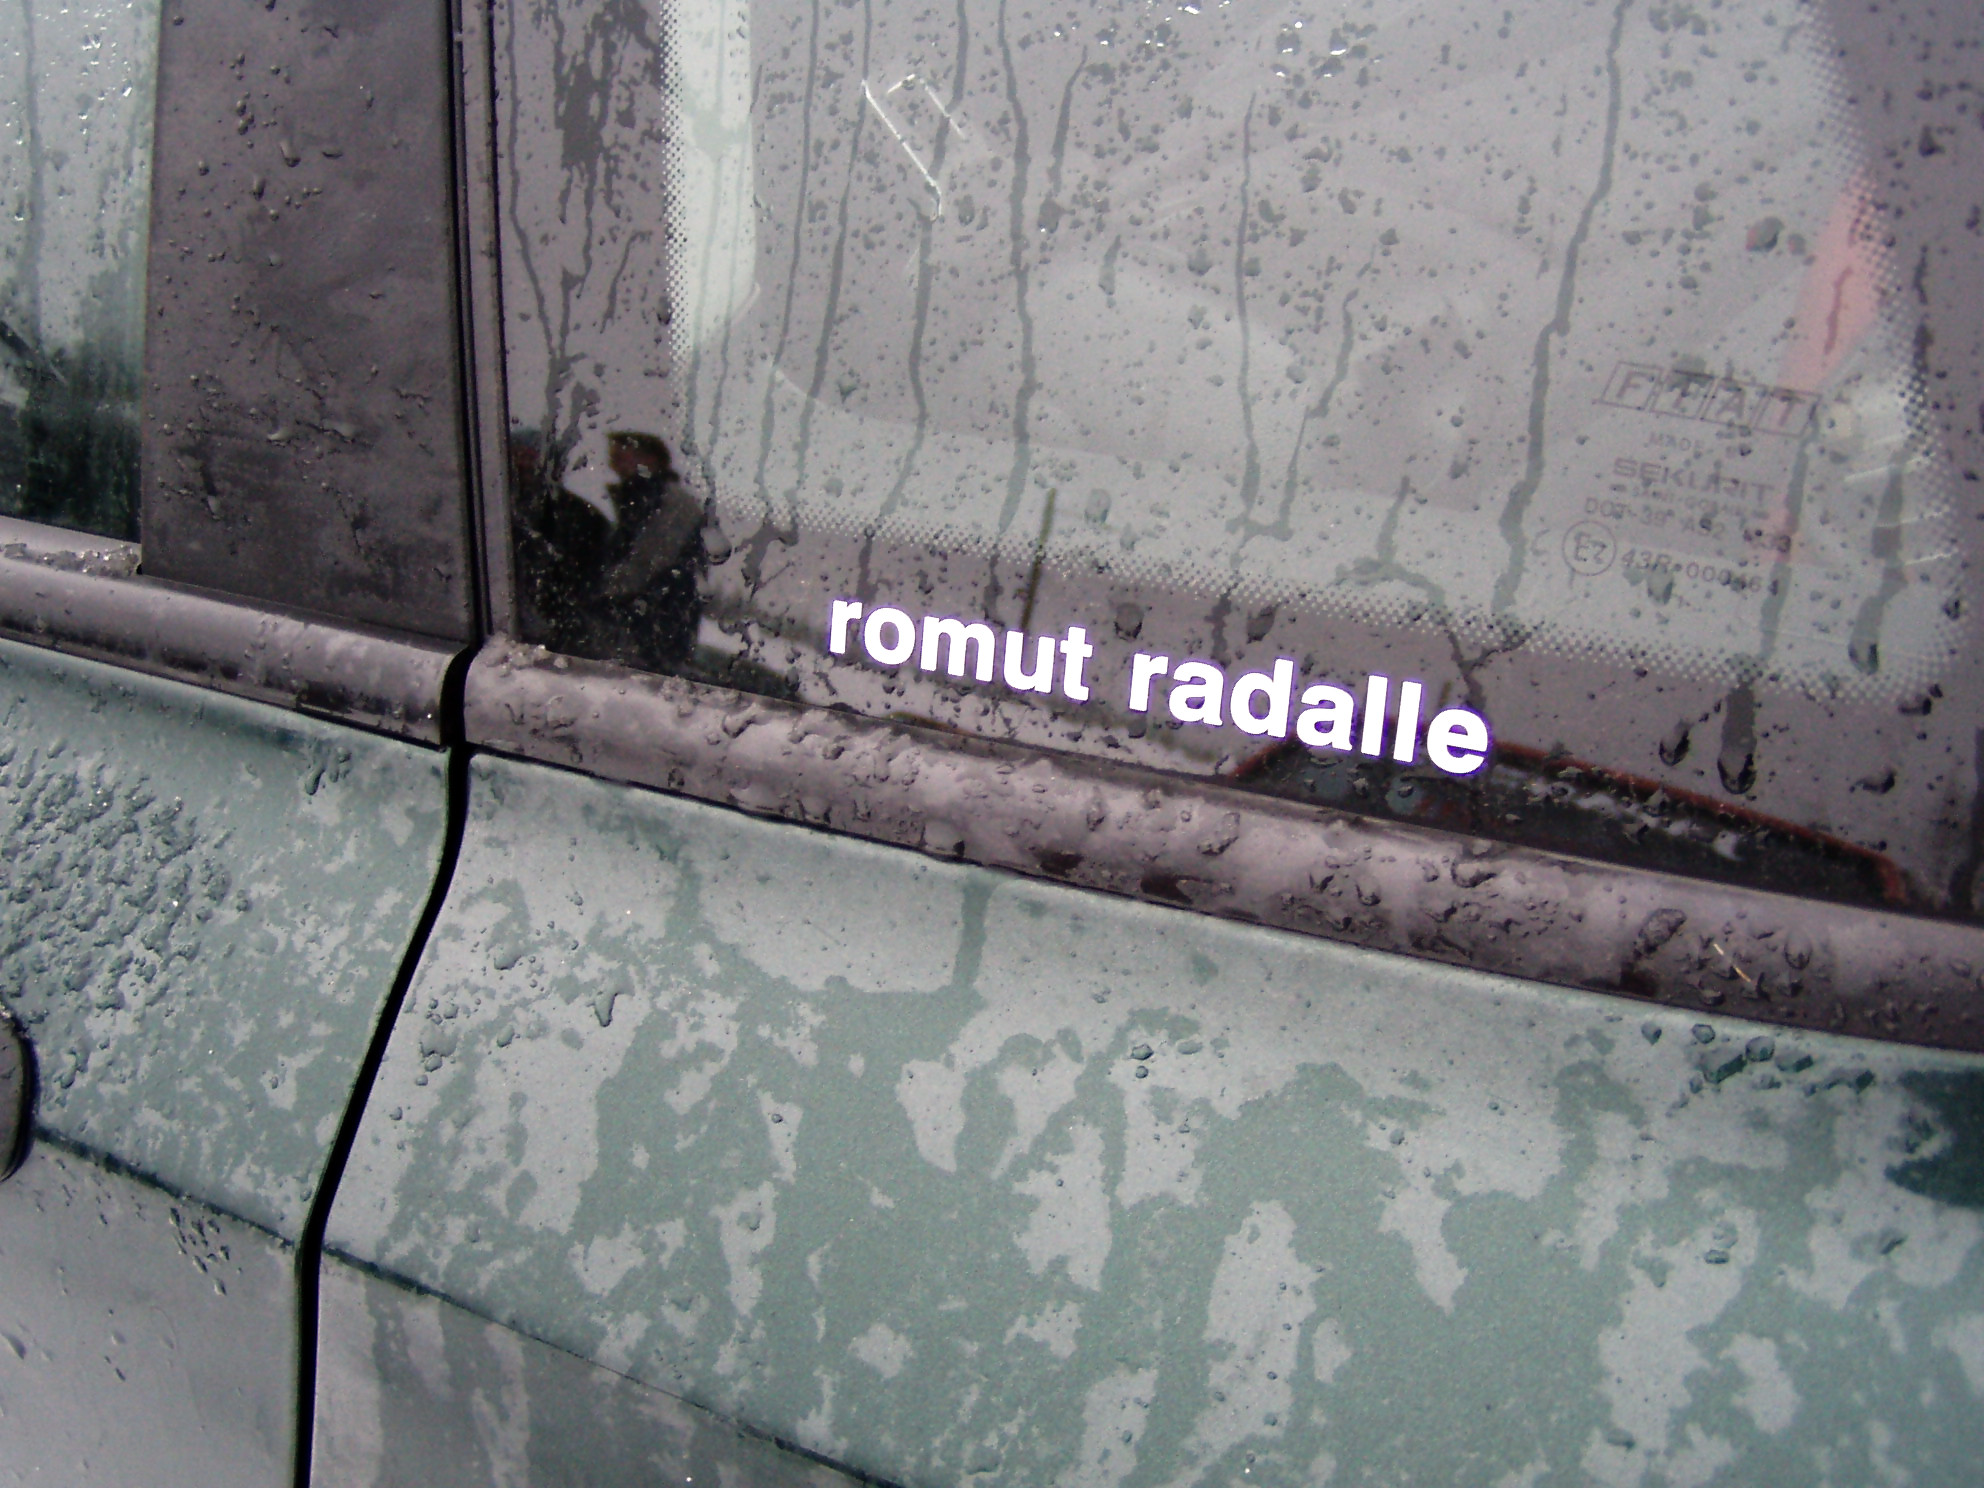 Radalle.com jÃ¤Ã¤ratapÃ¤ivÃ¤t 5.2.2005, HyvinkÃ¤Ã¤